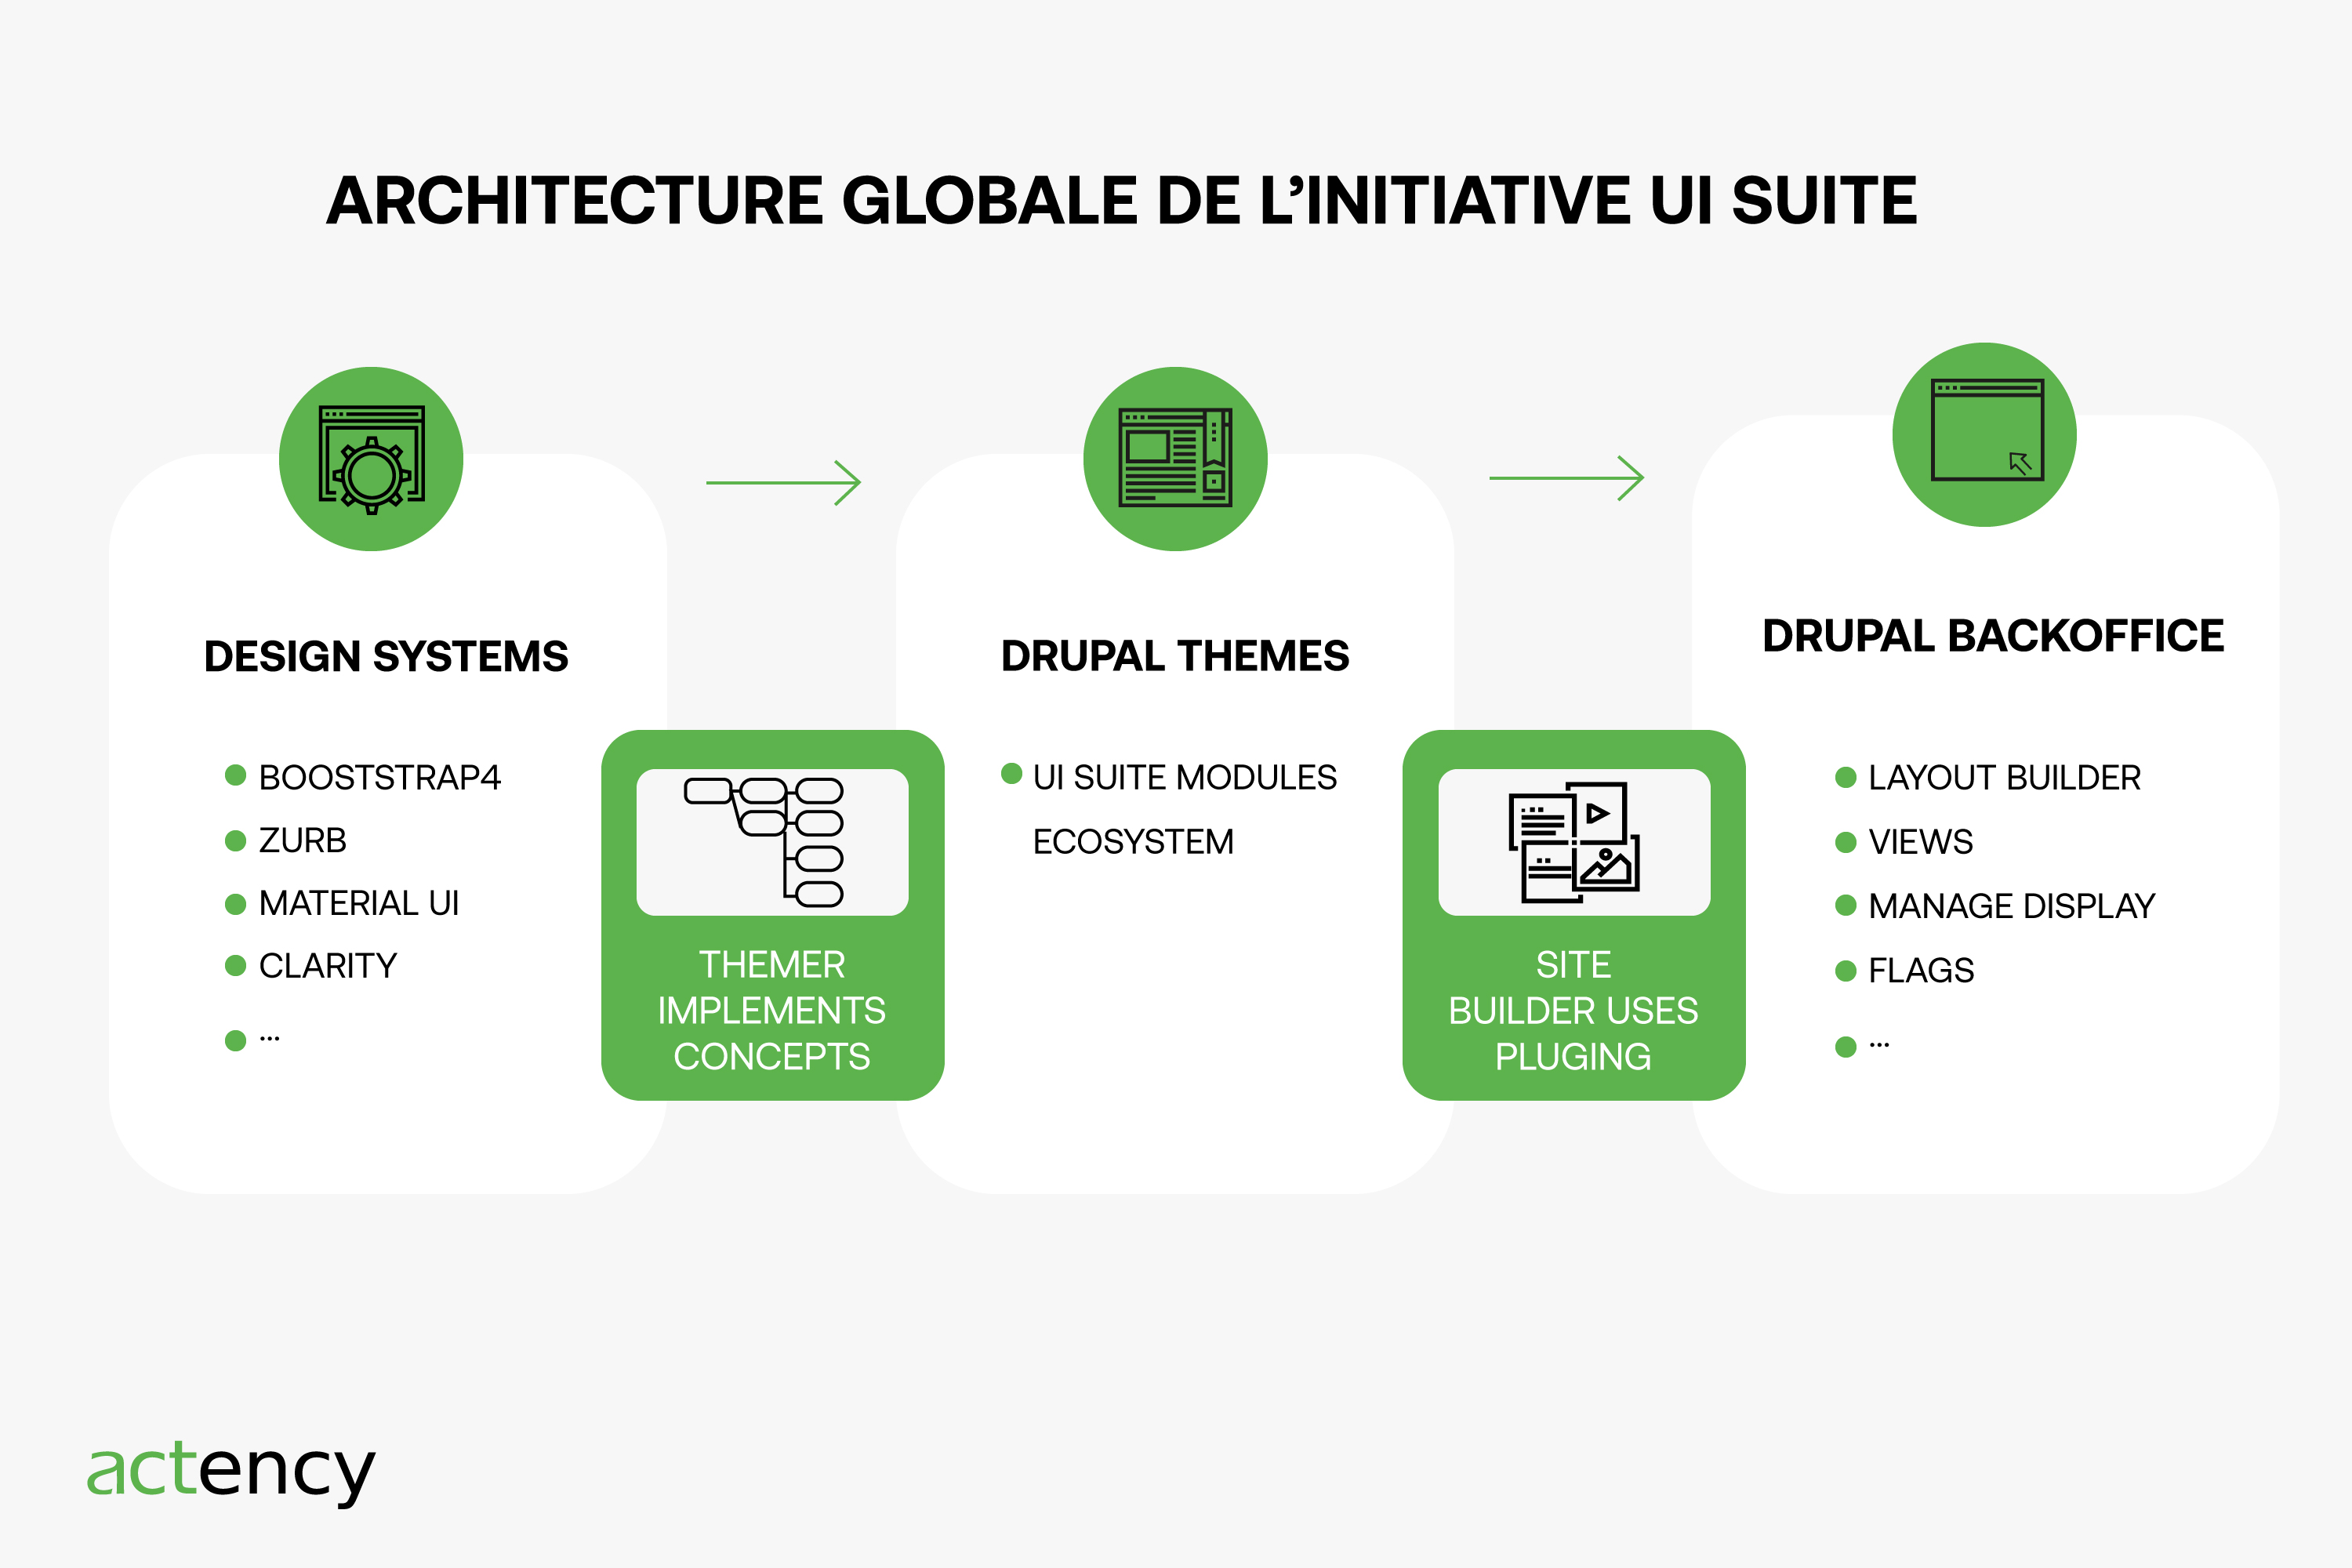 DESIGN-SYSTEM-DXP-DRUPAL-architecture-global-initiative-ui-suite